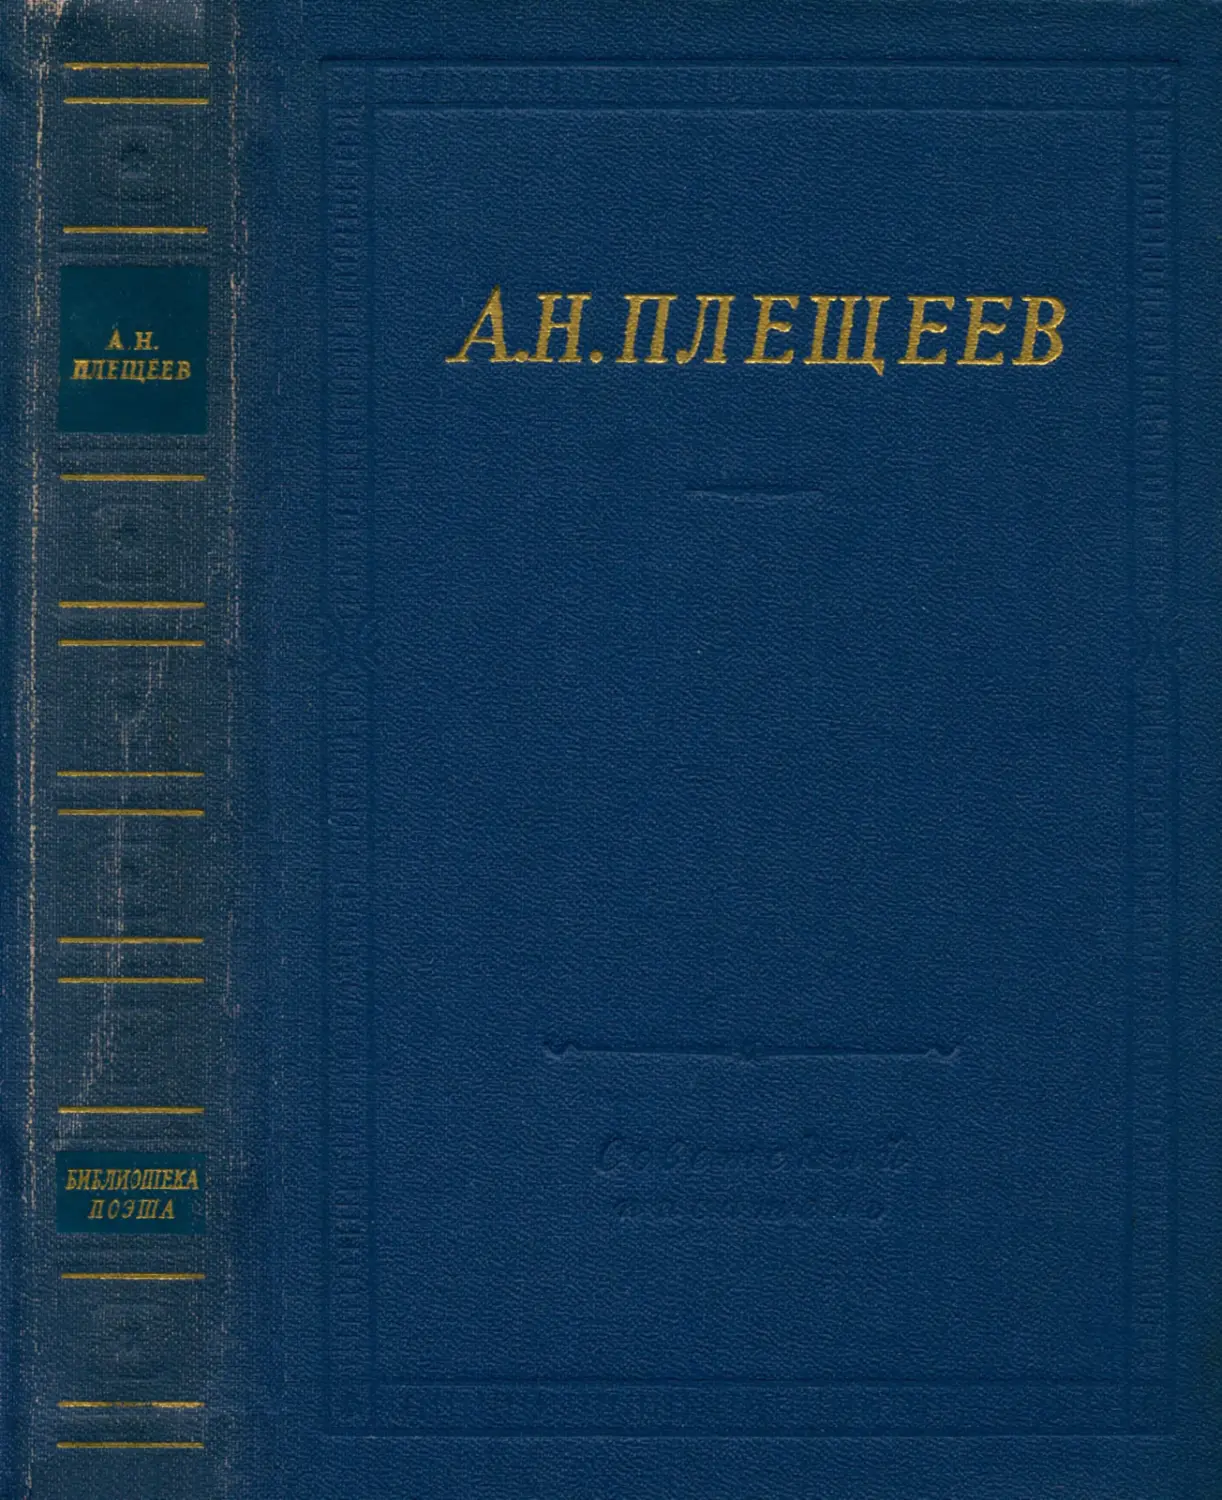 А. Н. Плещеев. Полное собрание стихотворений - 1964